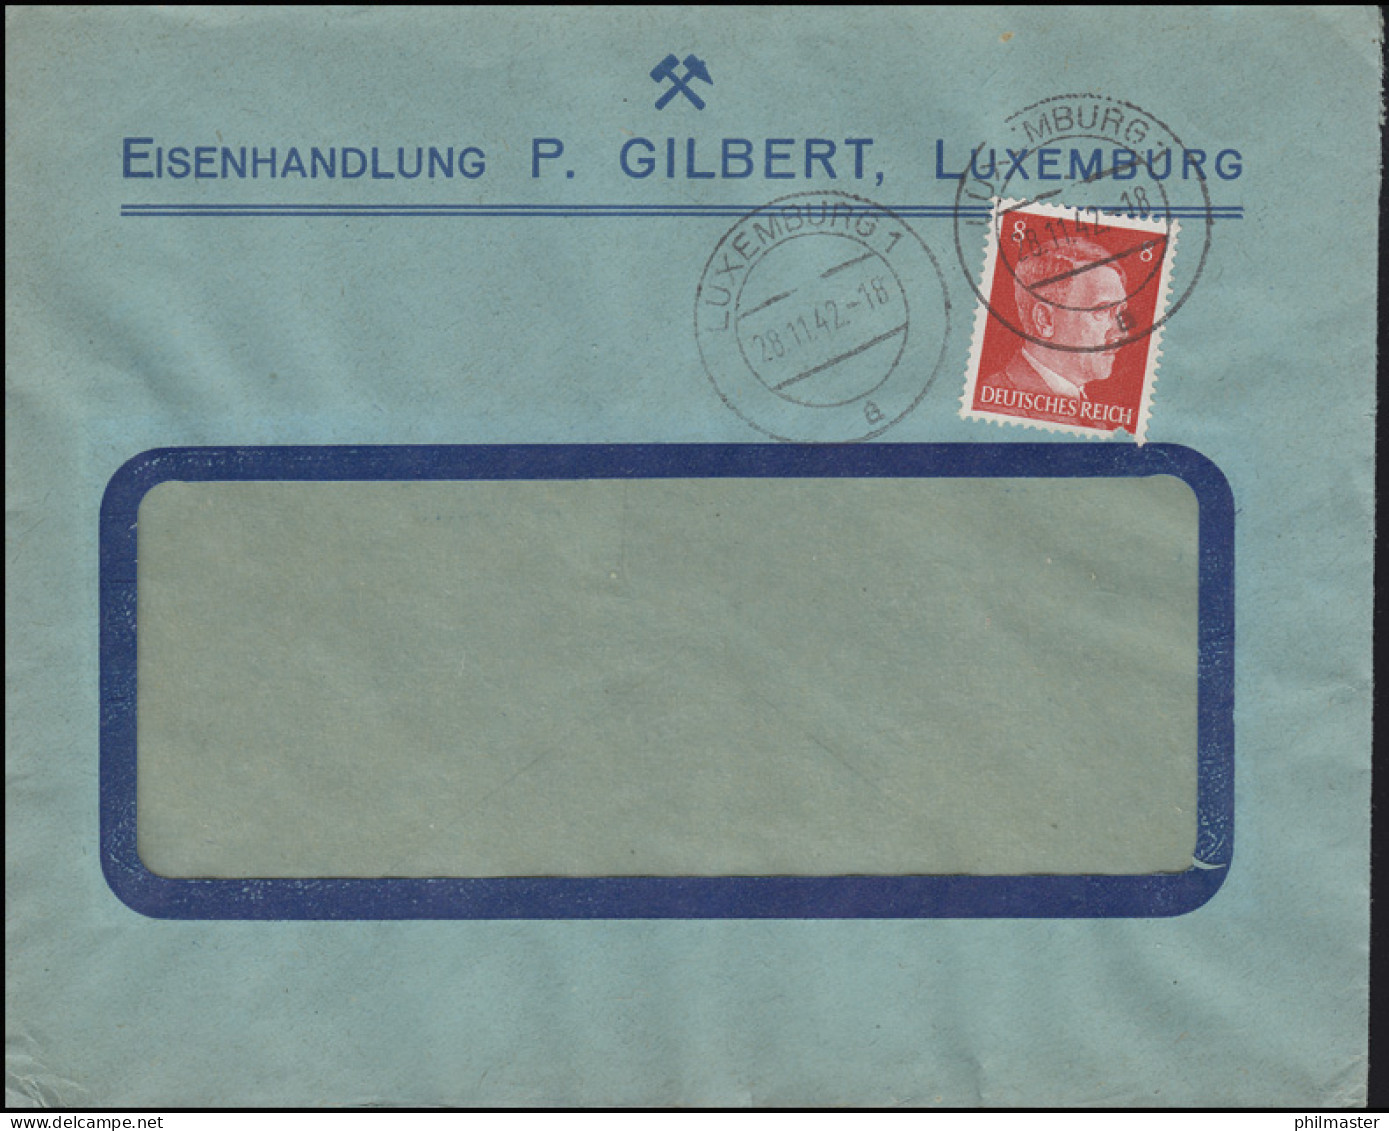 Freimarke Hitler 8 Pf. Fensterbrief Eisenhandlung Gilbert LUXEMBURG 28.11.42 - Fabriken Und Industrien